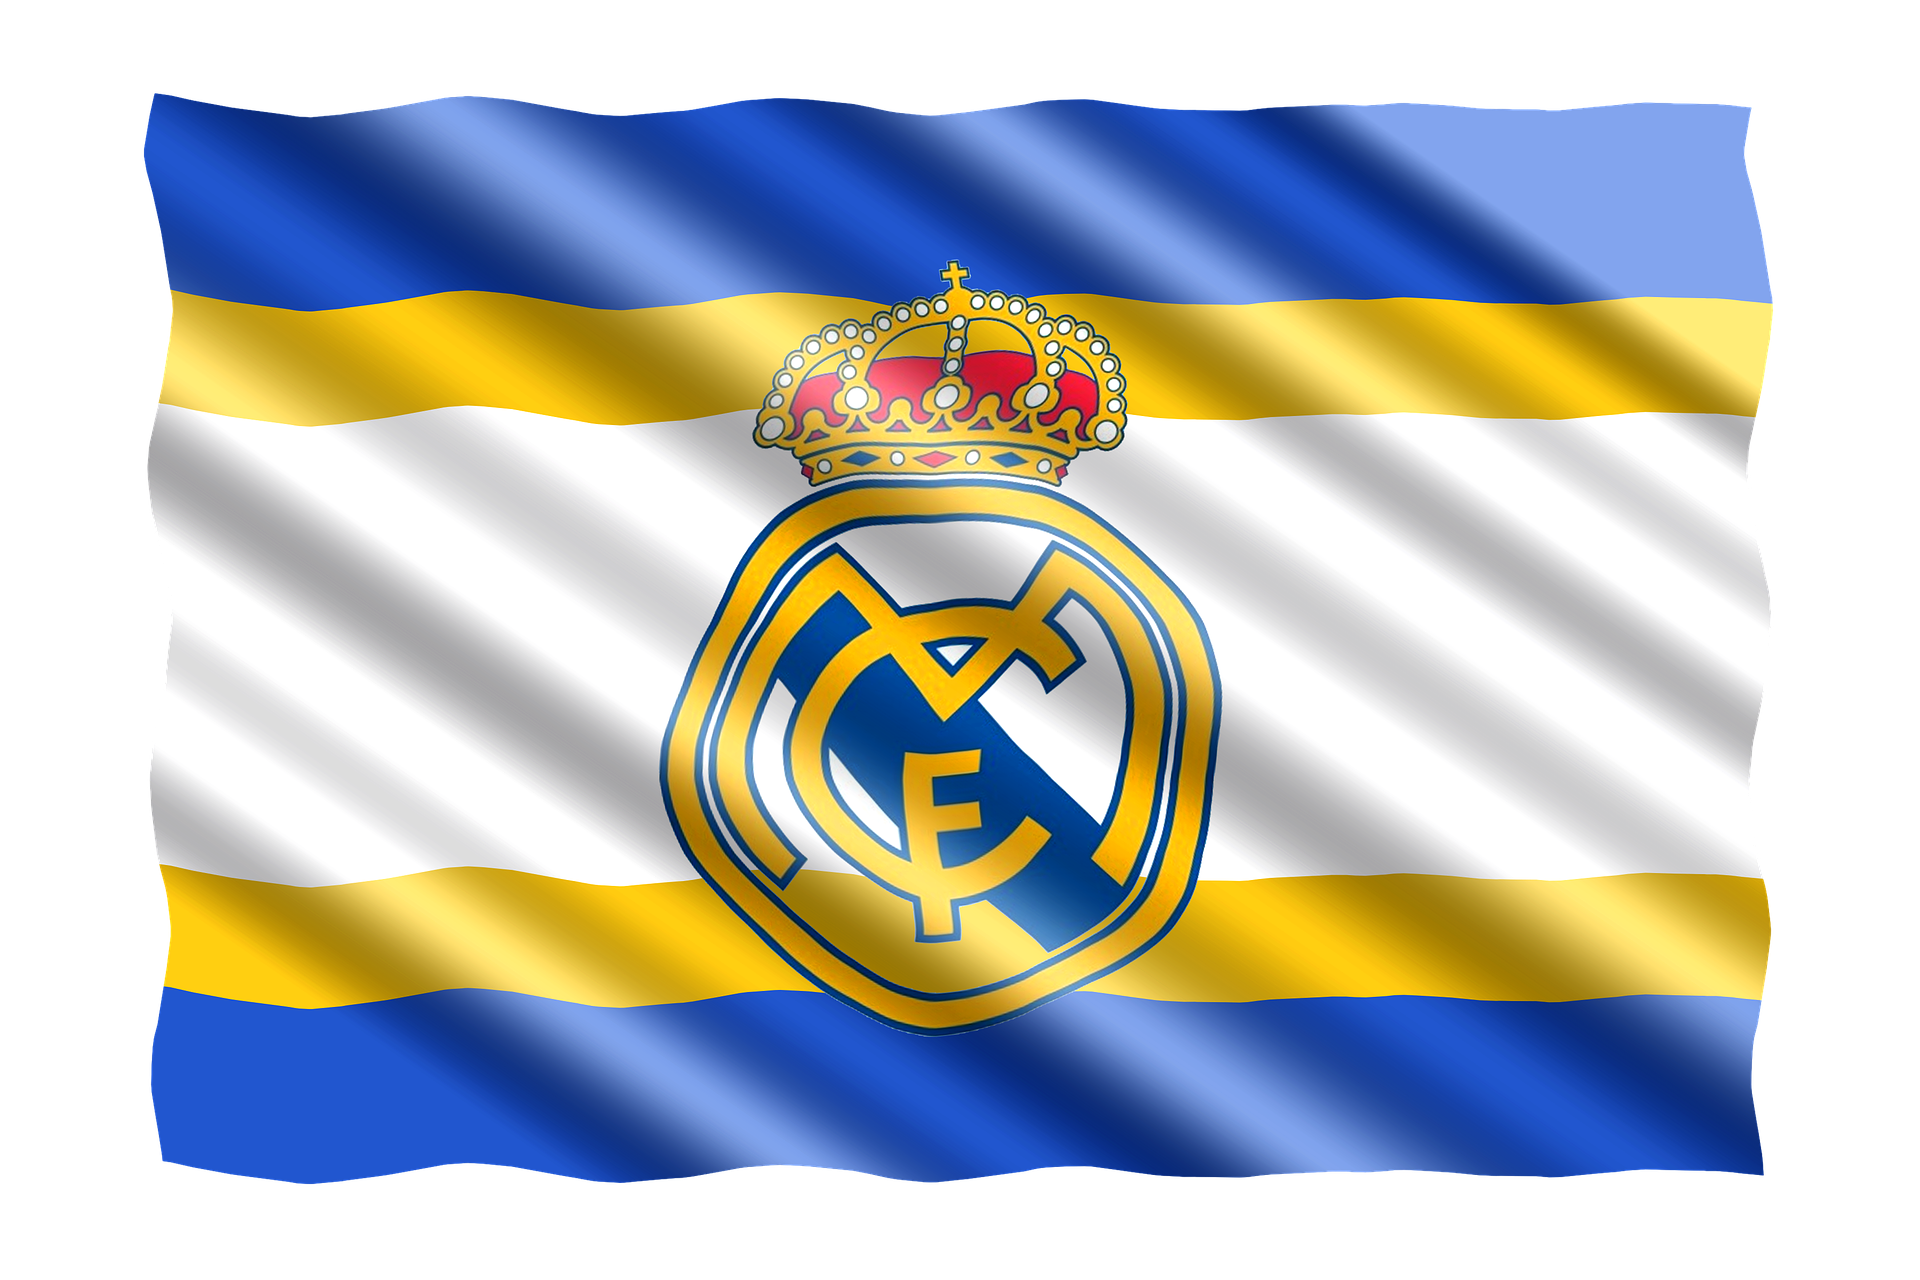 Hecho acá: en respuesta a Mbappé, Real Madrid ganó la Champions de la mano de Valverde y Vinicius